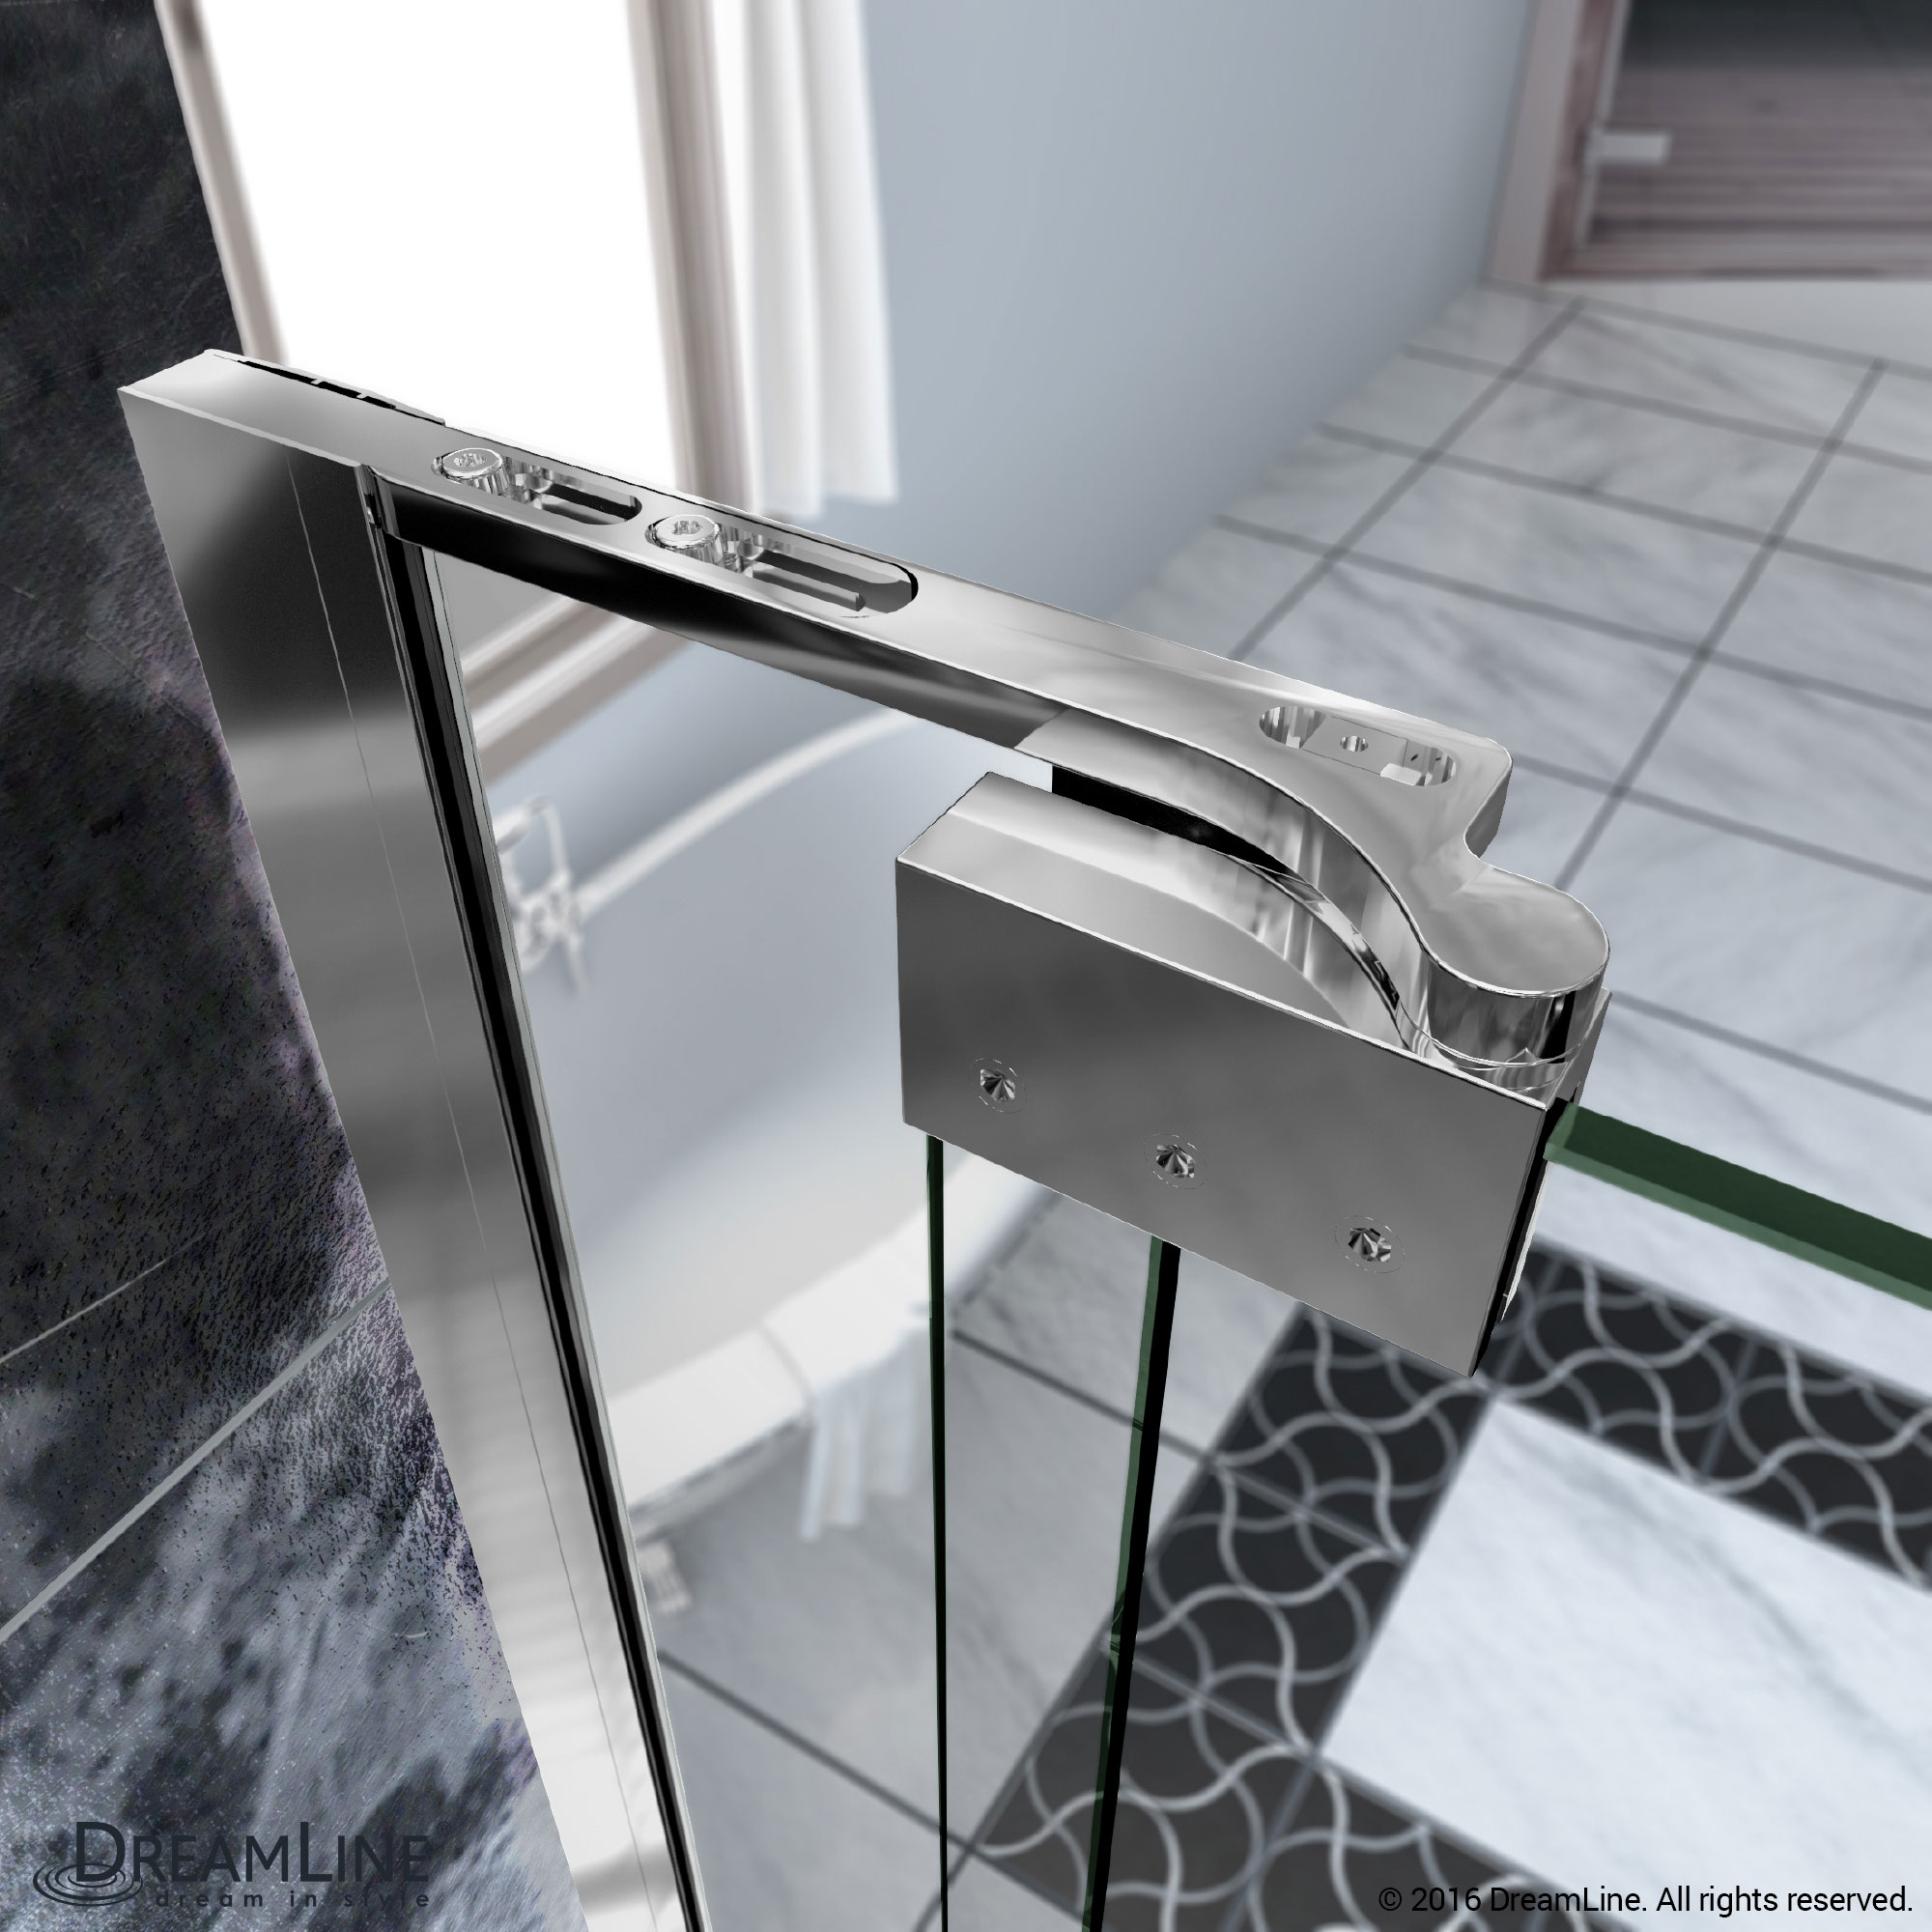 DreamLine SHDR-4249728-01 Allure 49 to 50 in. Frameless Pivot Clear Glass Shower Door In Chrome